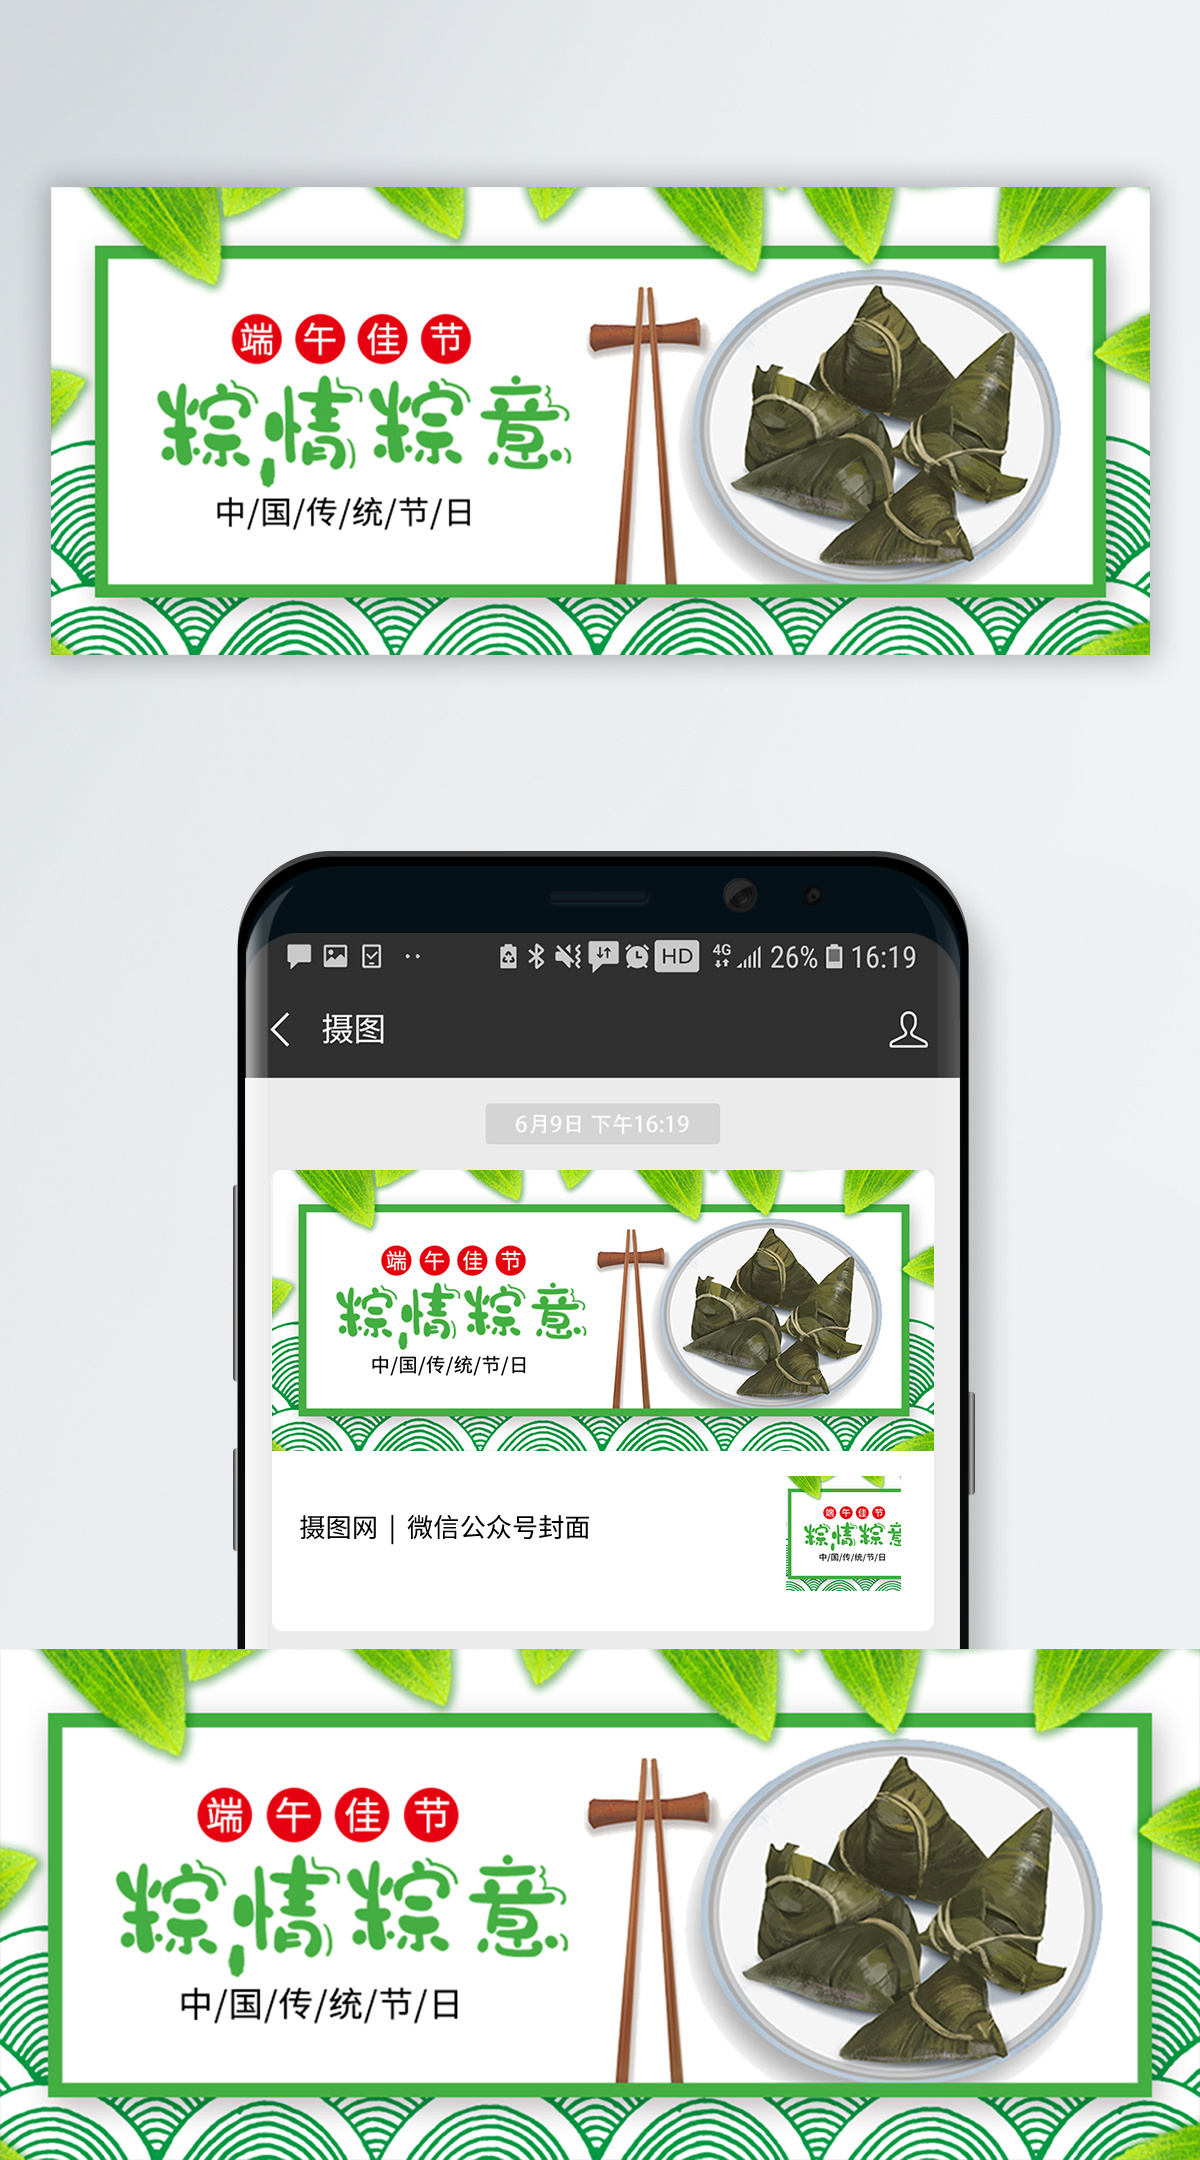 公众号banner中国传统端午节公众号封面模板